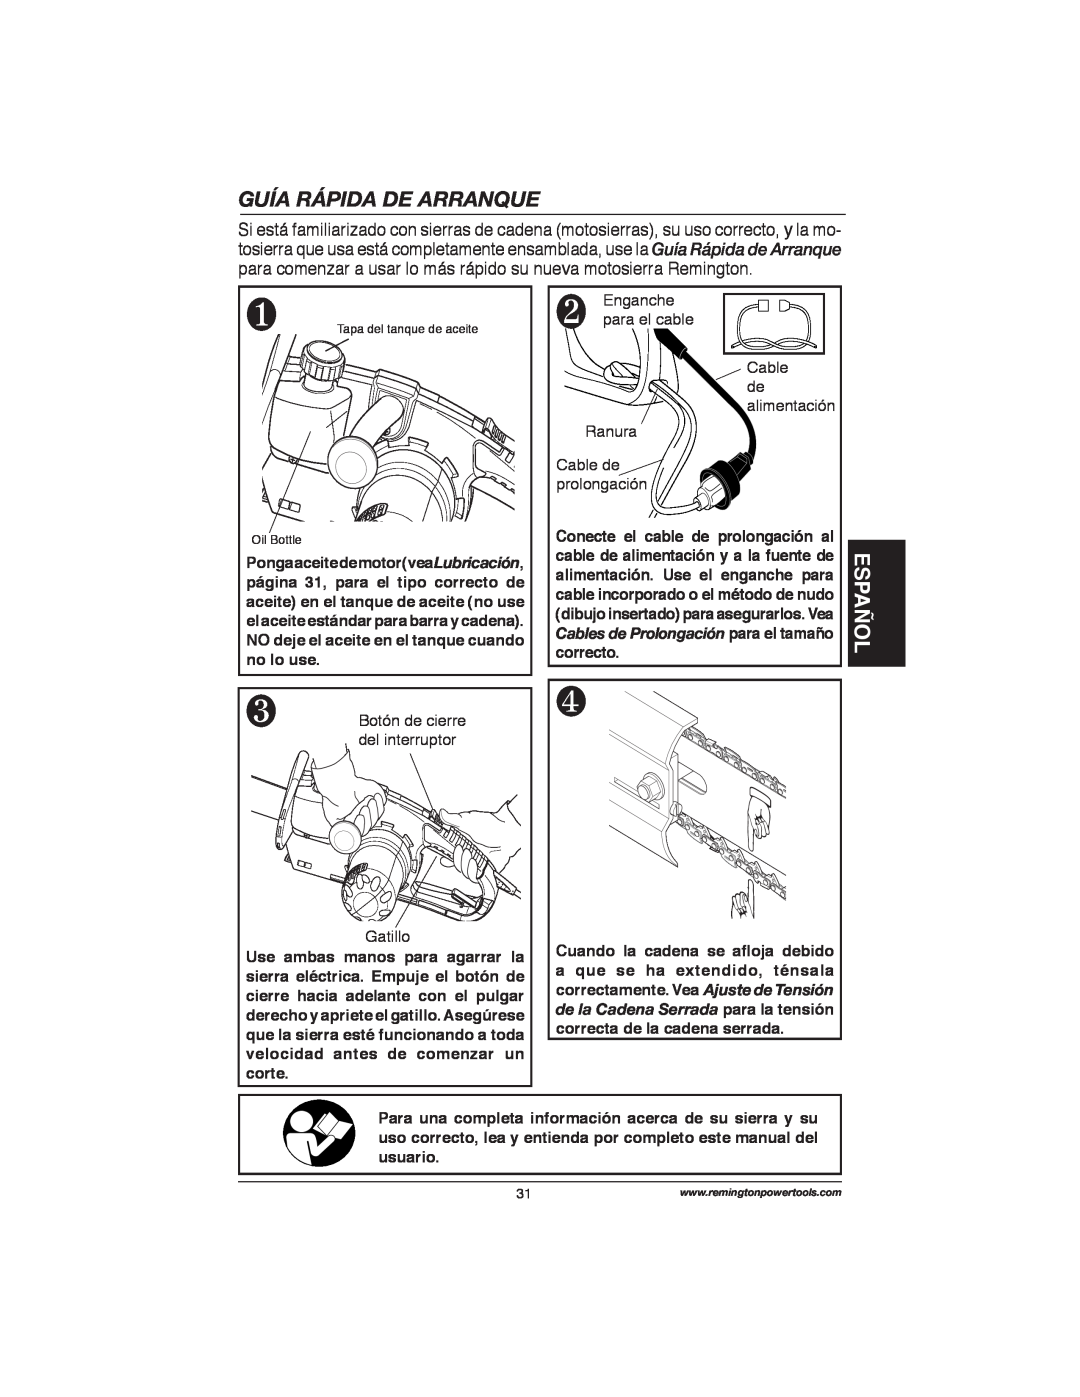 Remington Power Tools M15014AS, M30016AS Guía Rápida De Arranque, Español, Botón de cierre del interruptor Gatillo 